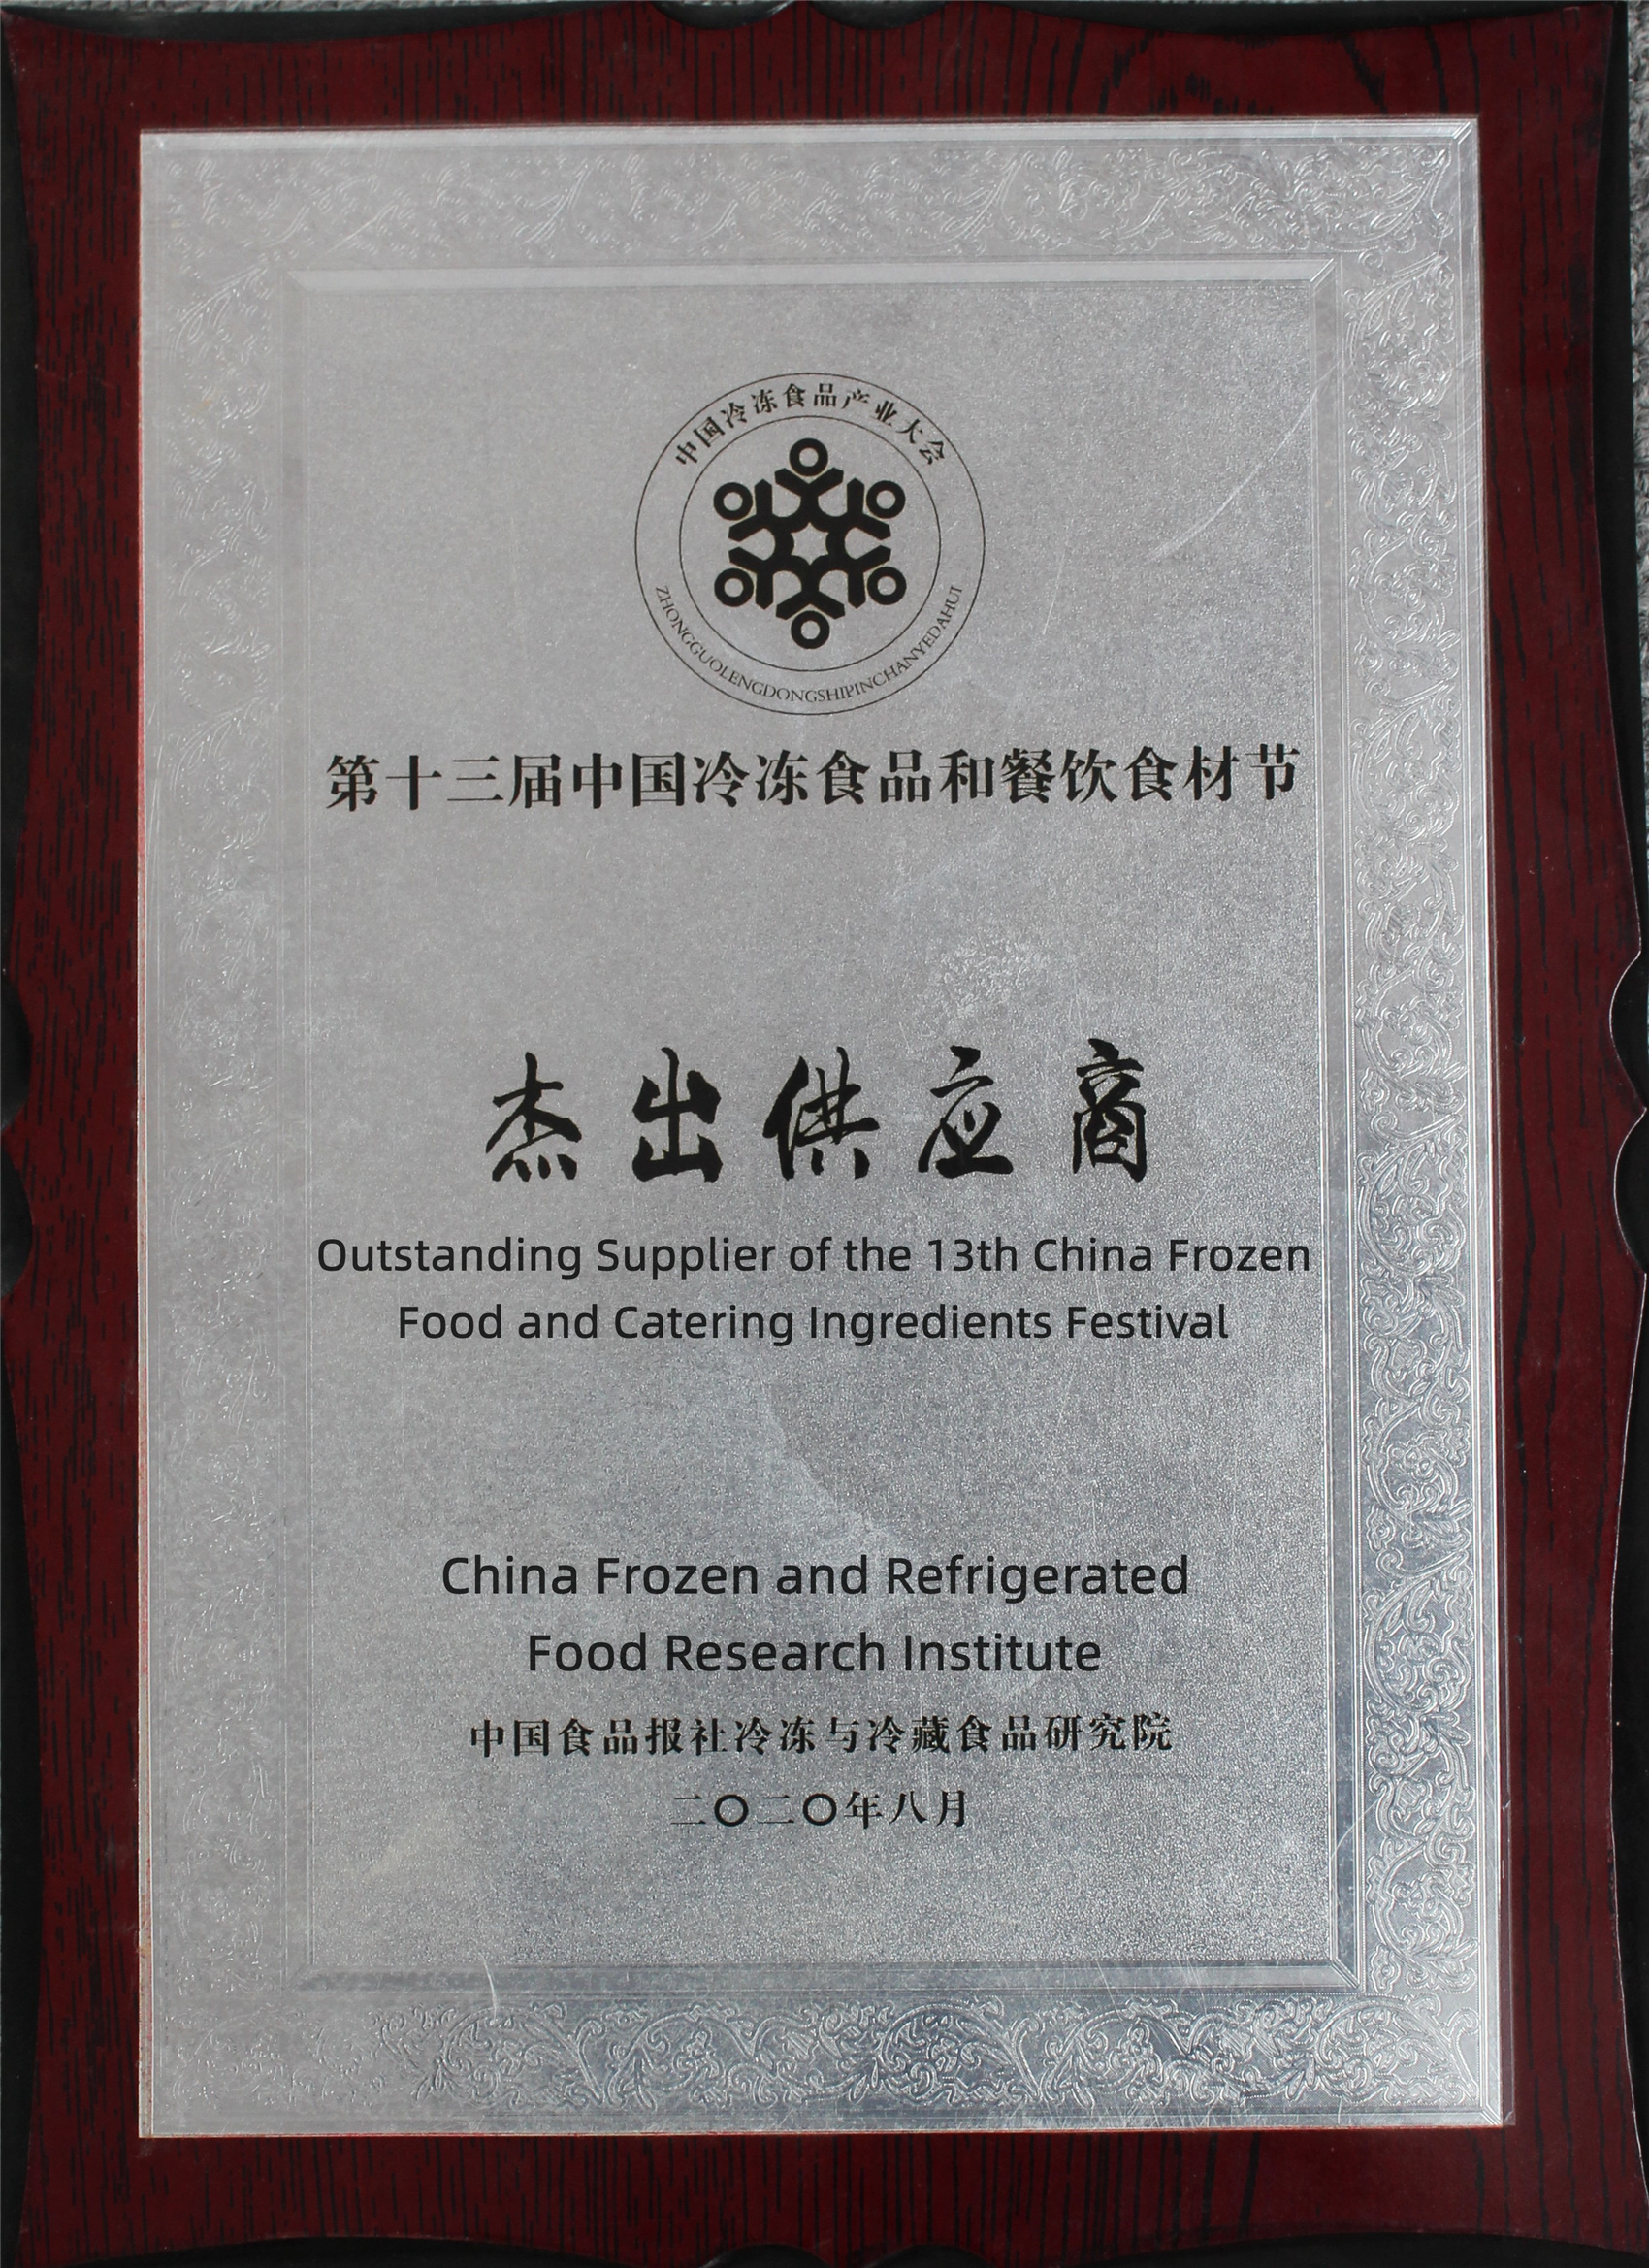 Enastående leverantör av den 13:e China Frozen Food and Catering Ingredients Festival_副本